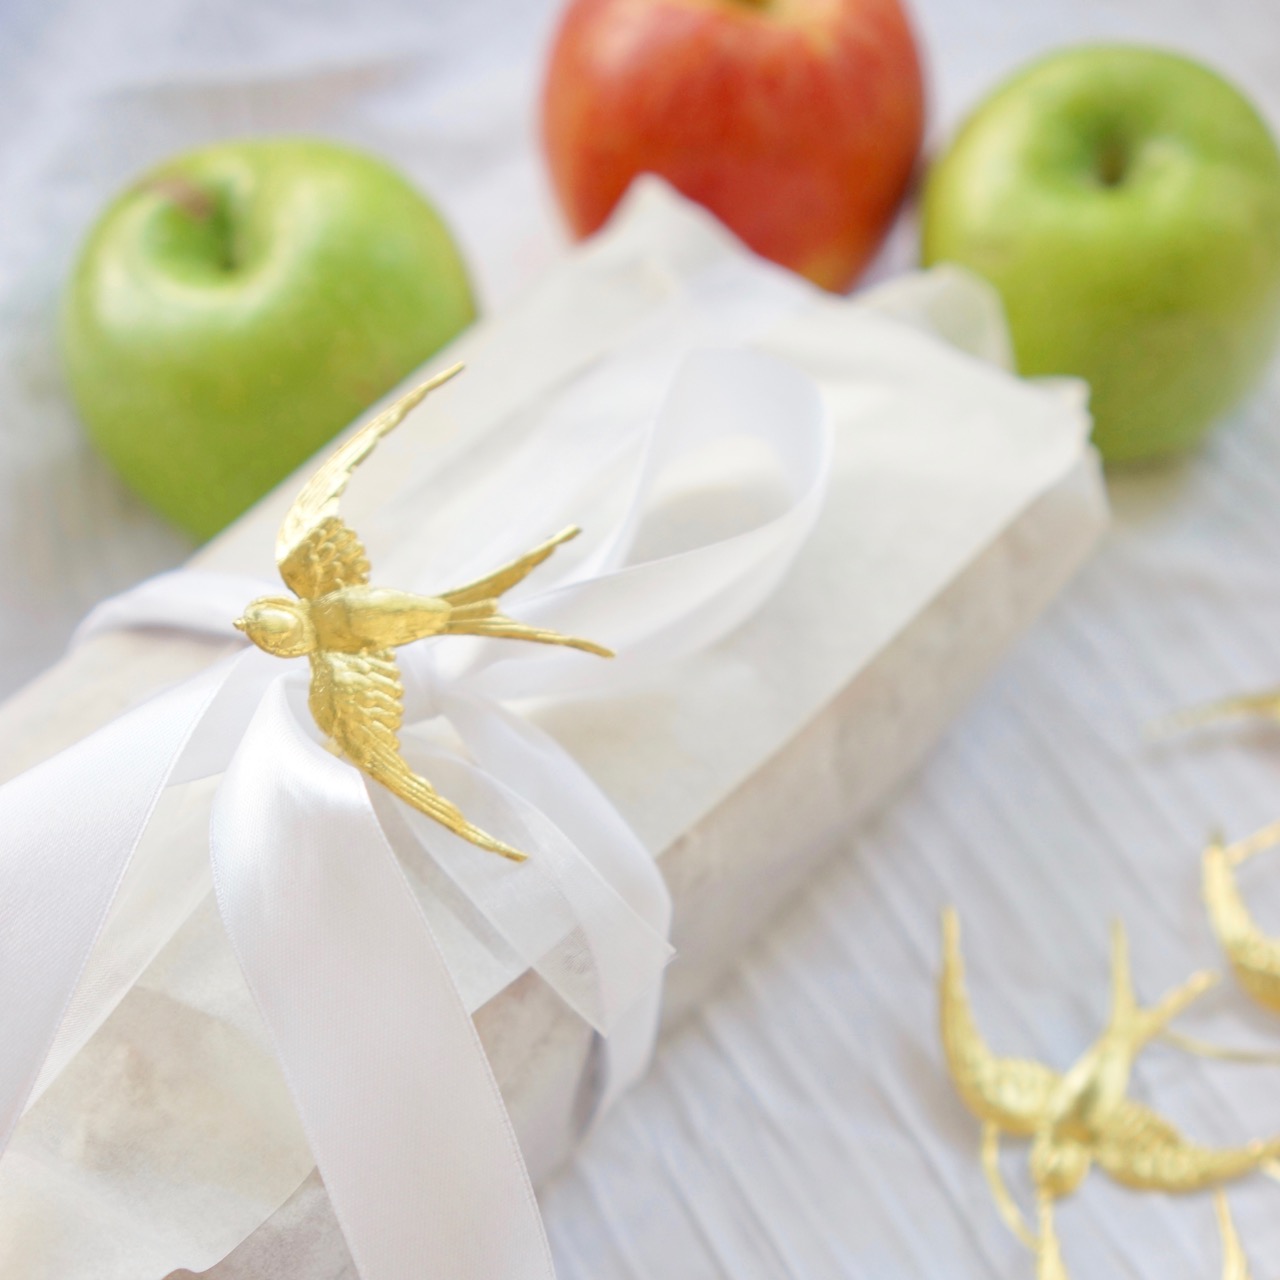 עוגת תפוחים מקמח כוסמין עטופה בנייר לבן וסרט בד. גבישס. מתכונים לראש השנה.